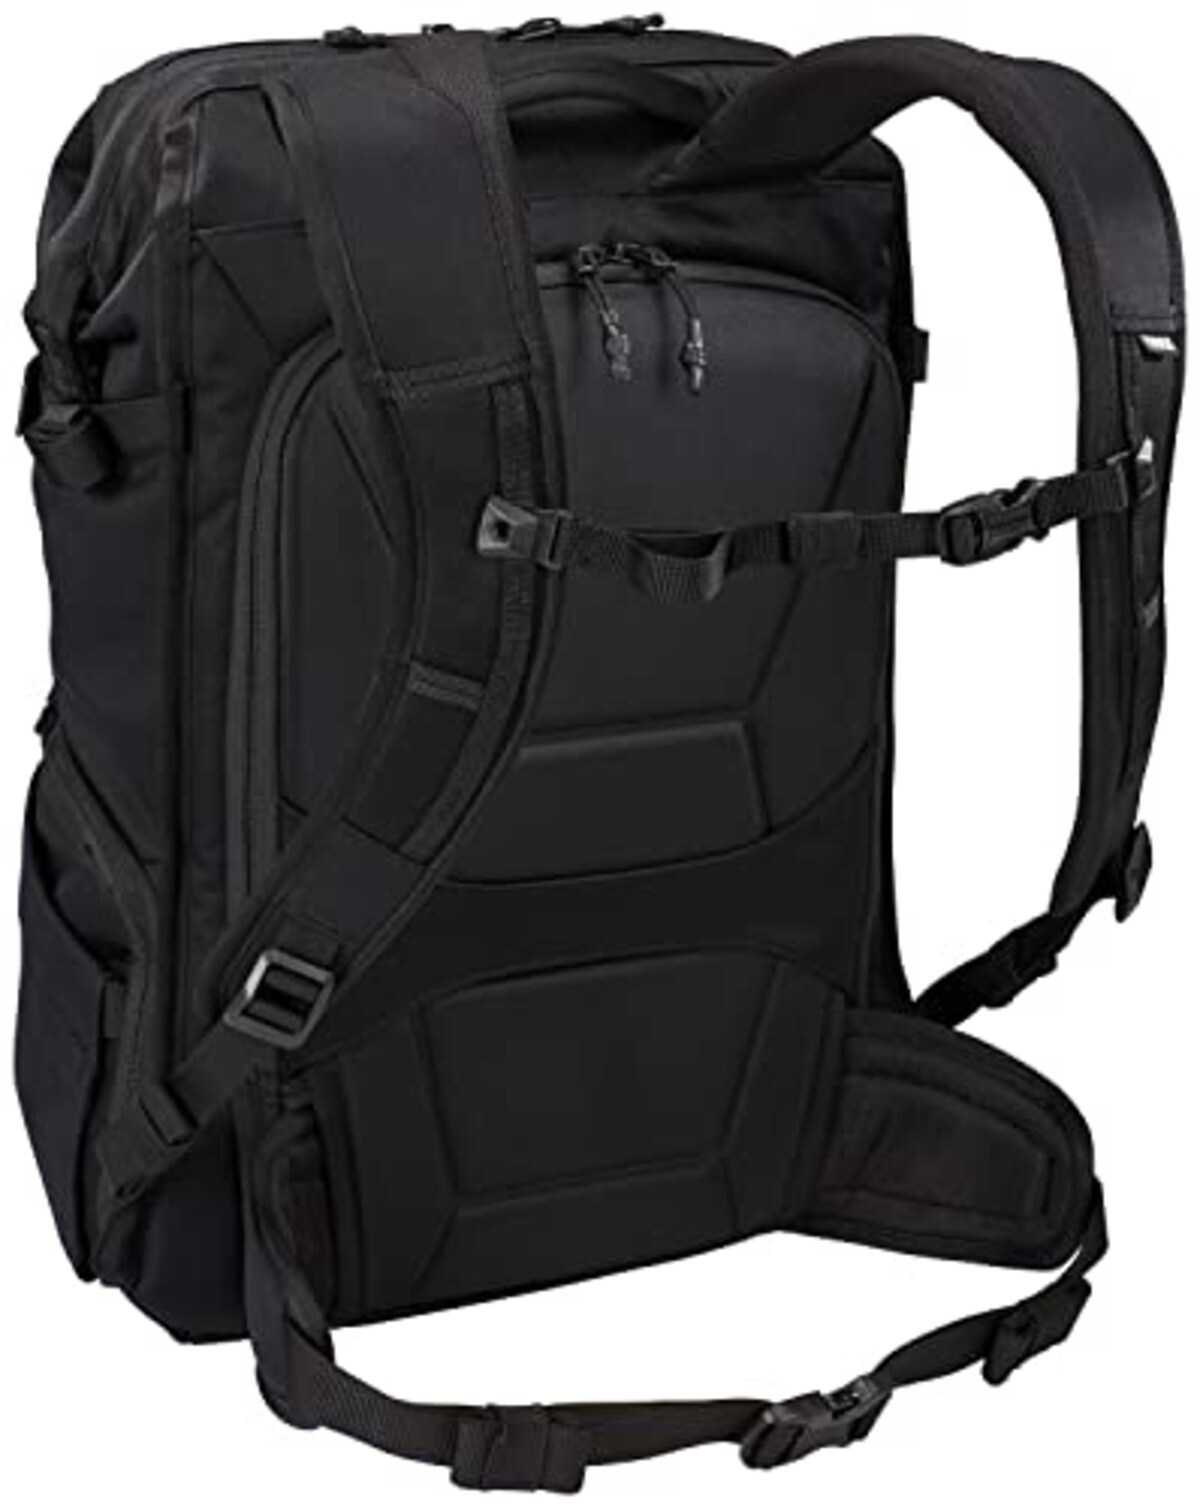  [スーリー] カメラ用バッグパック Covert Camera Backpack Black 容量:24L 3203906画像3 